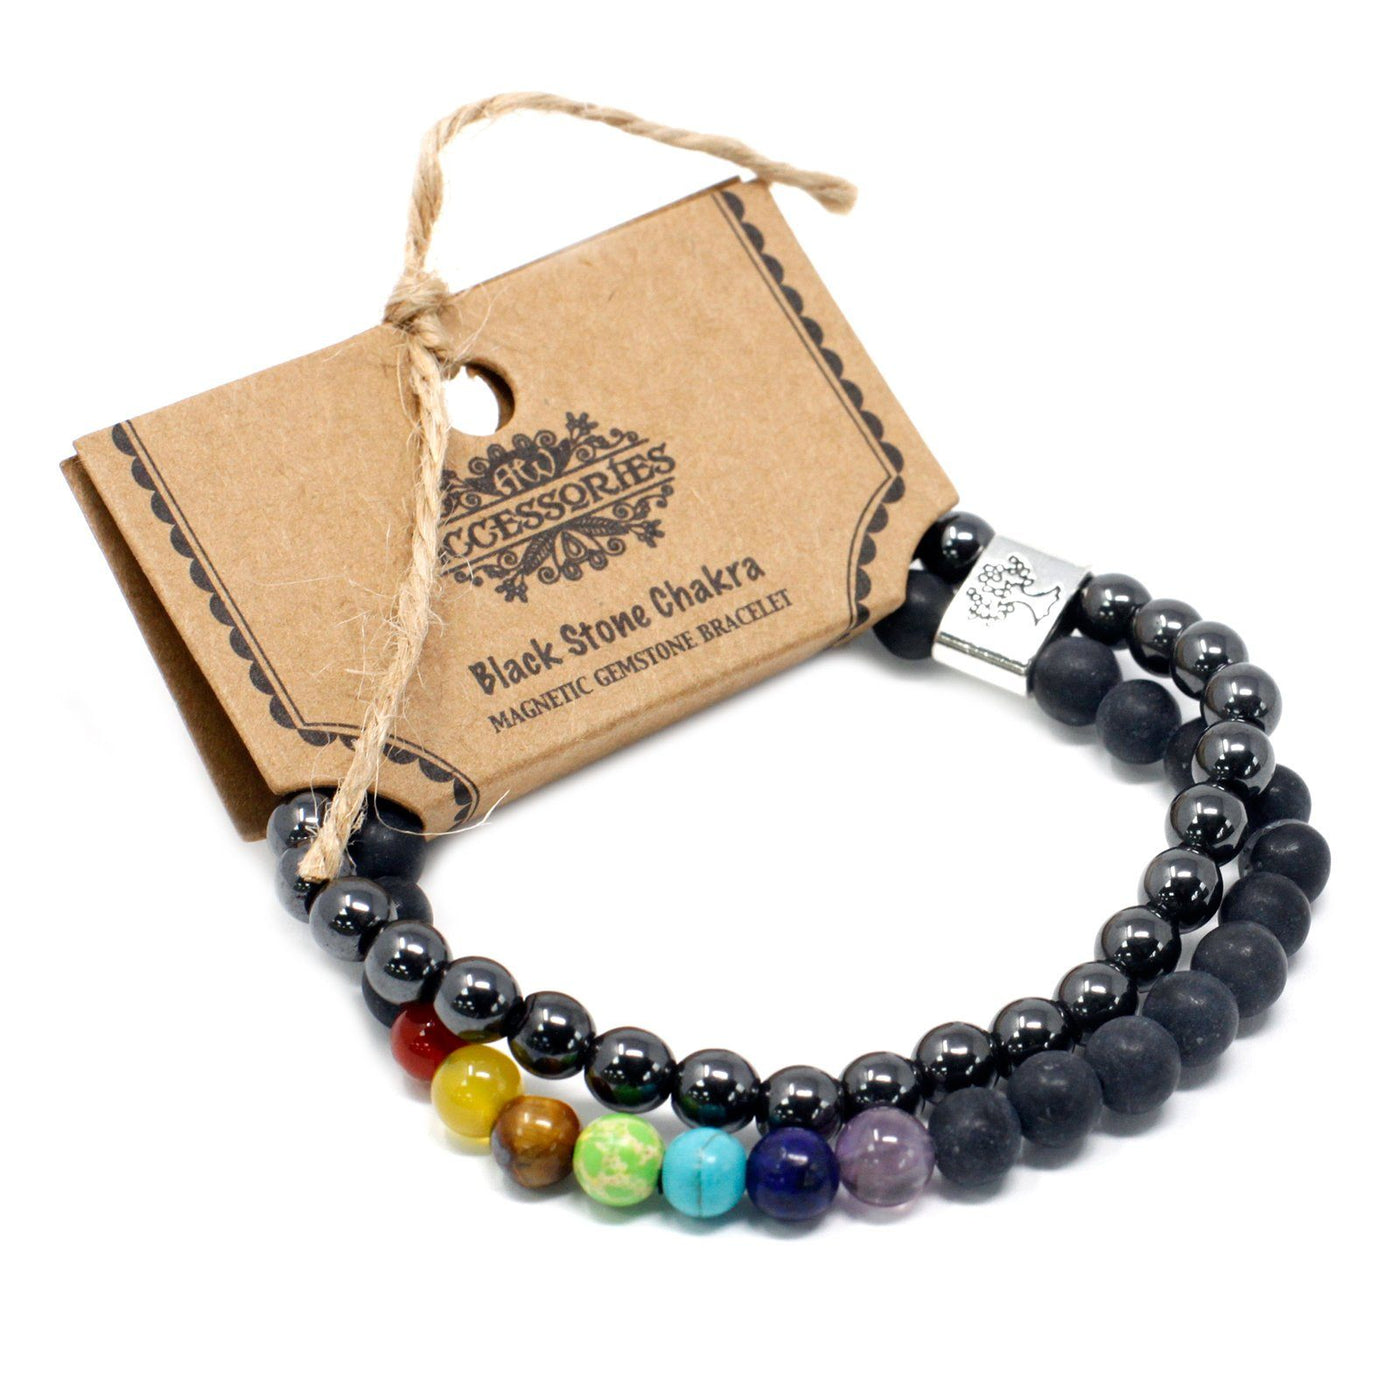 Unisex Tree Of Life Magnetic Black Stone Chakra Gemstone Bracelet Set.